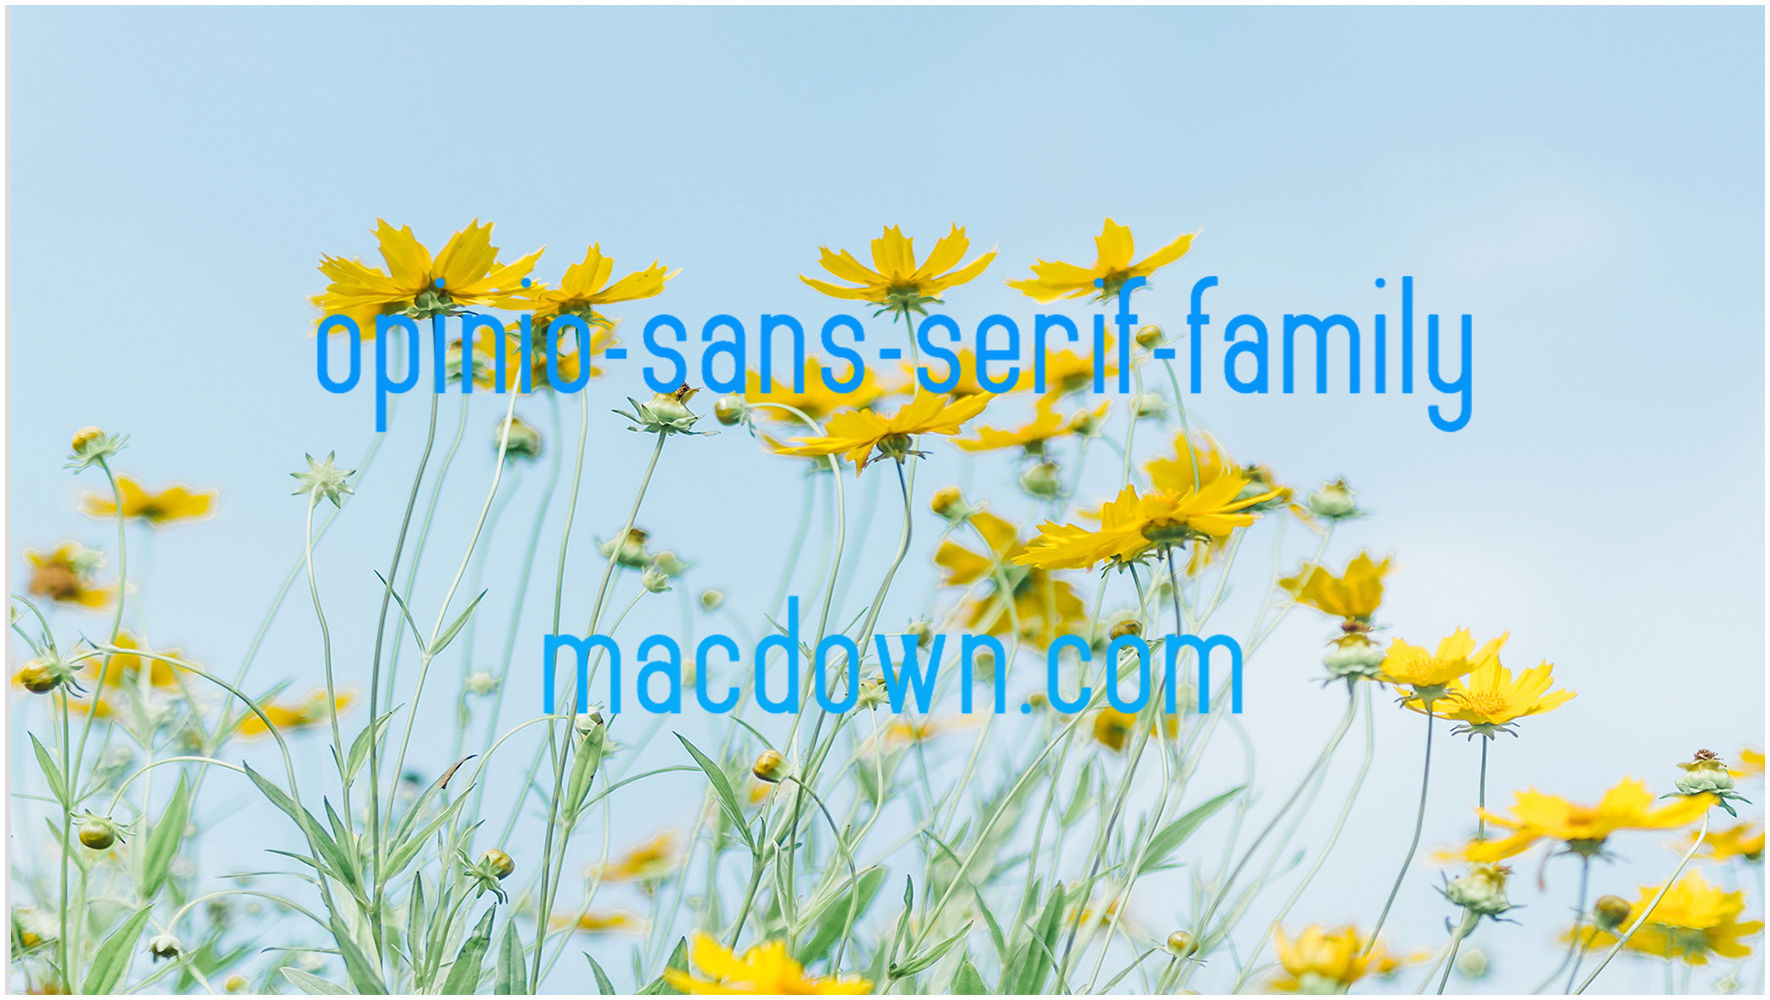 科幻风格Mac字体包Opinio Sans serif family